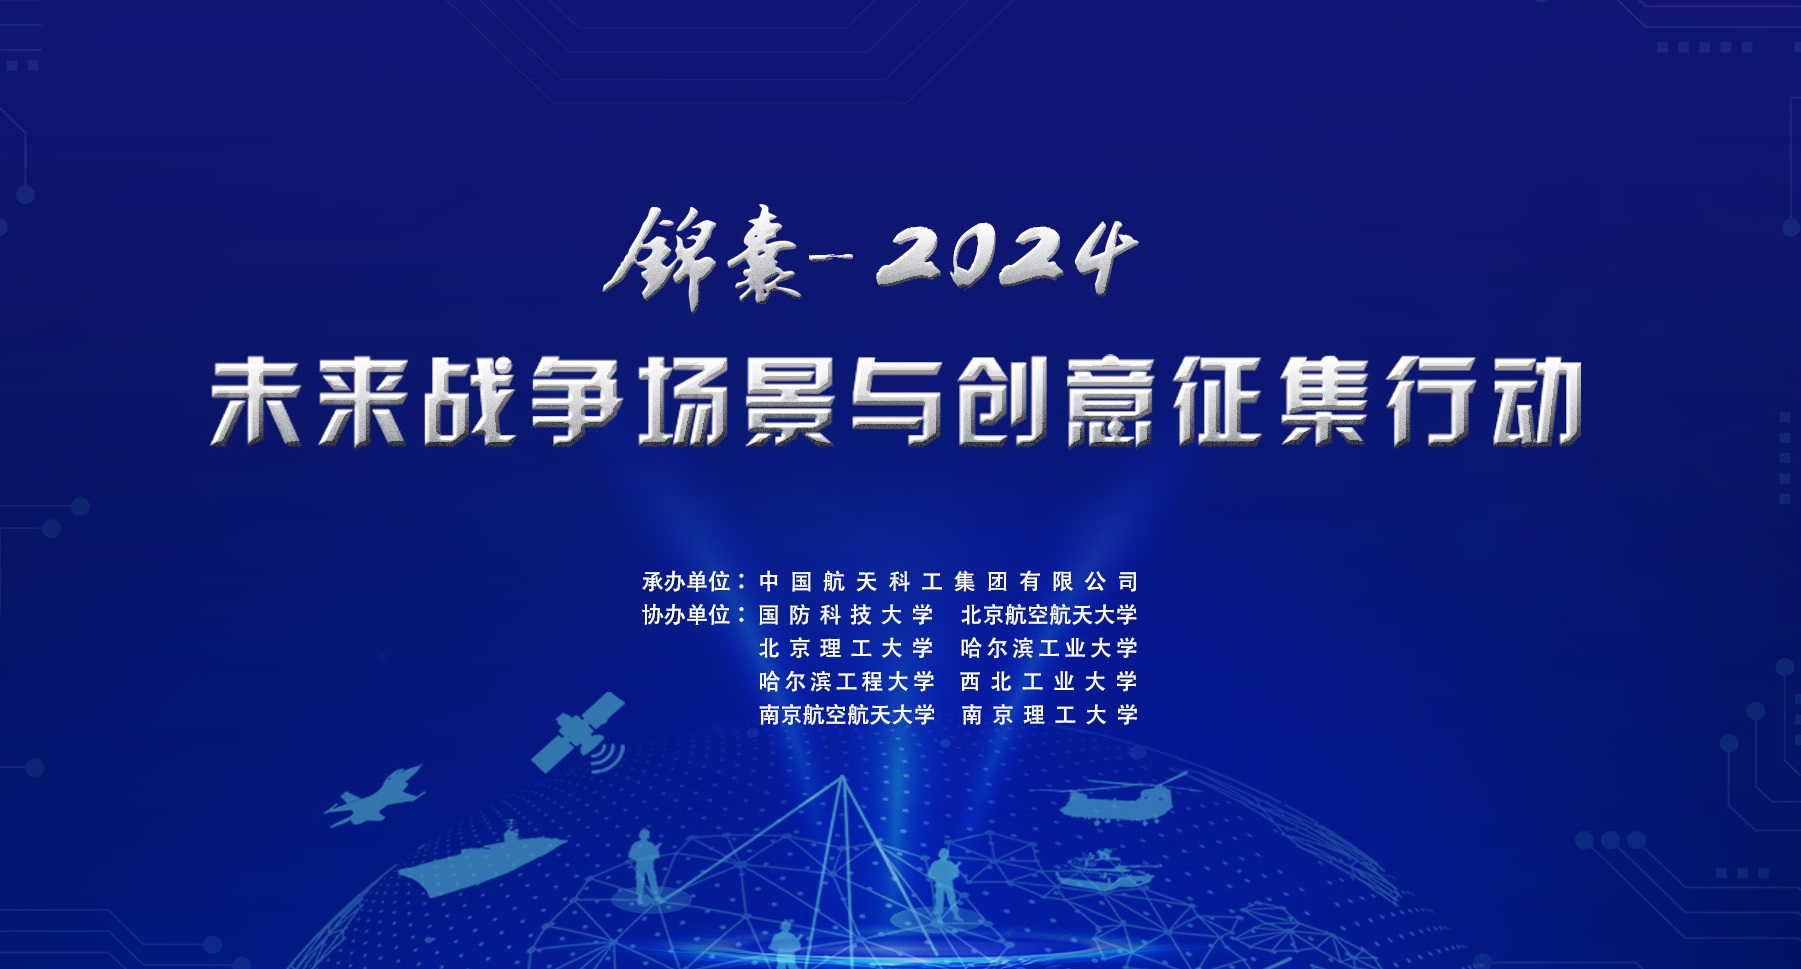 	     “锦囊-2024”未来战争场景与创意征集行动启动公告
	     